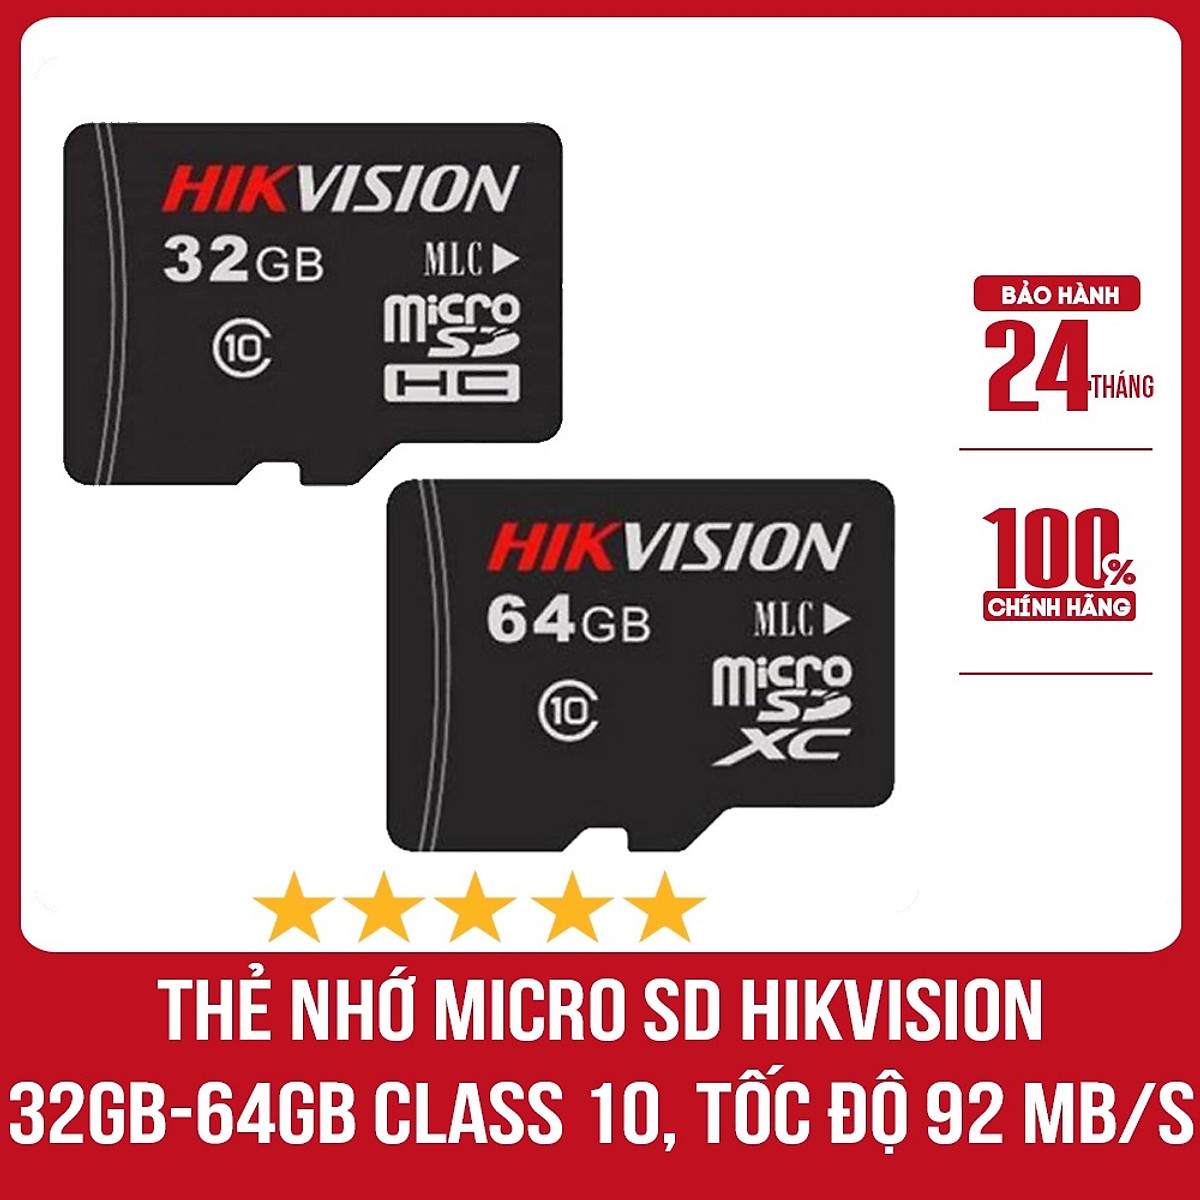 Thẻ nhớ chuyên camera Mirco SD HIKVISION 64G - 32GB - 92MB/s, chuyên ghi hình cho camera, máy ảnh, ... Hàng nhập khẩu